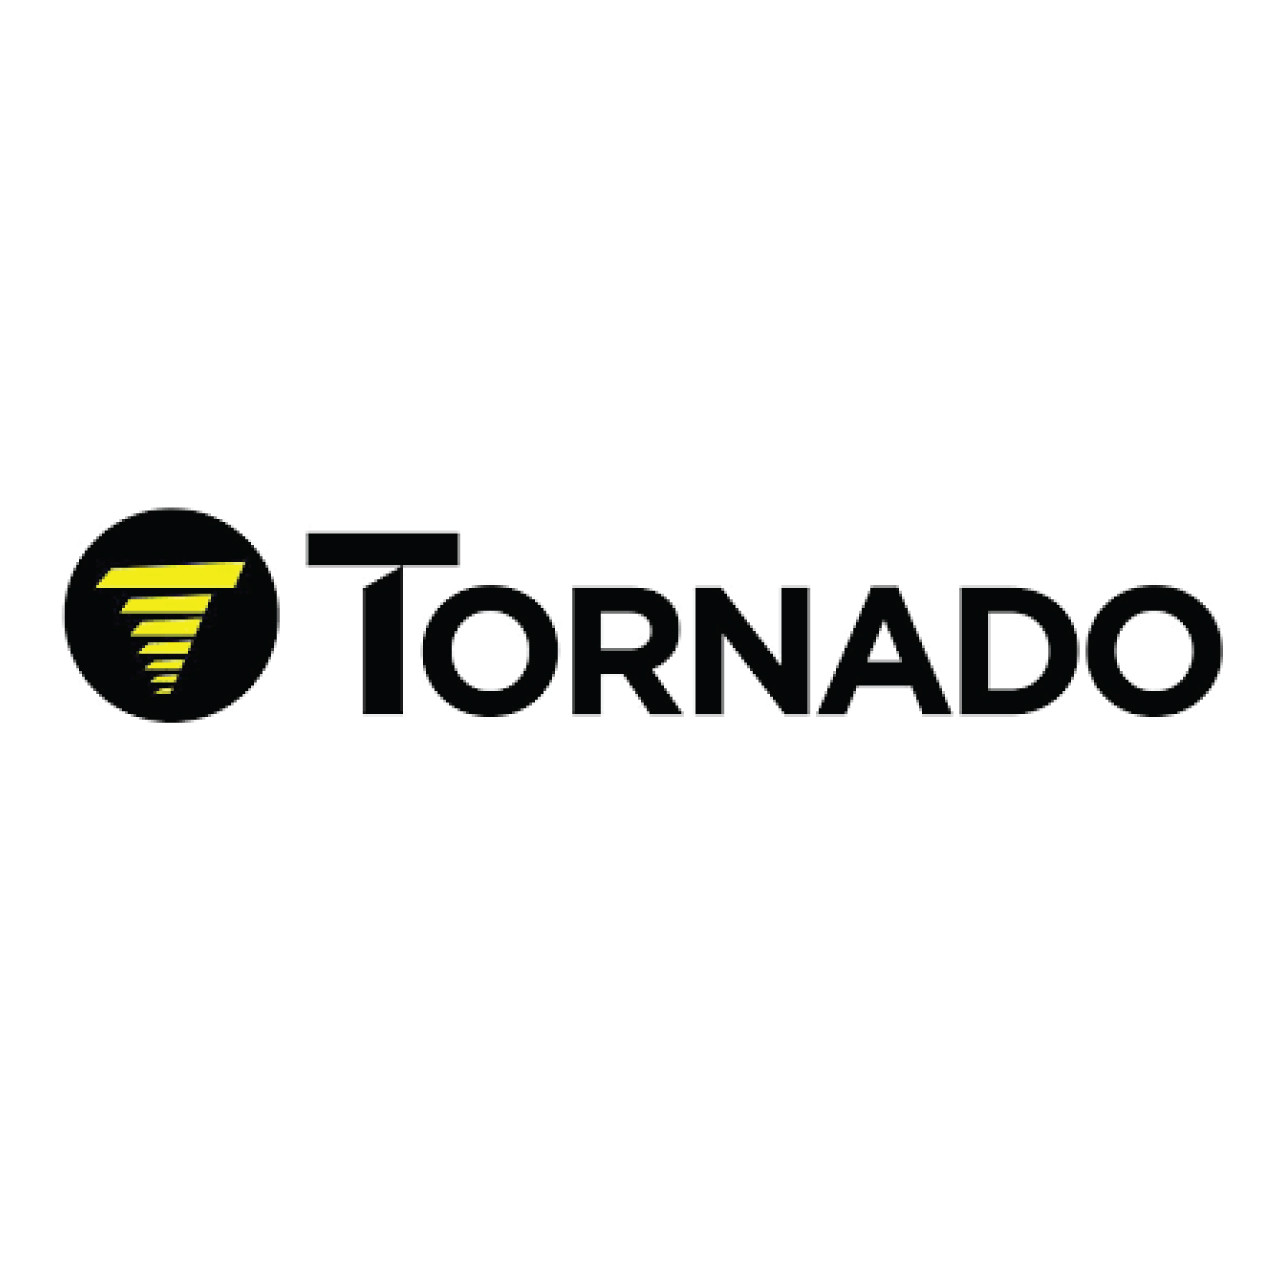 ECO27G, Tornado ECO27G, Tornado CHEMICAL GLASS WINDOW 1 GALLON ECO CONCEPTS 27, Tornado parts